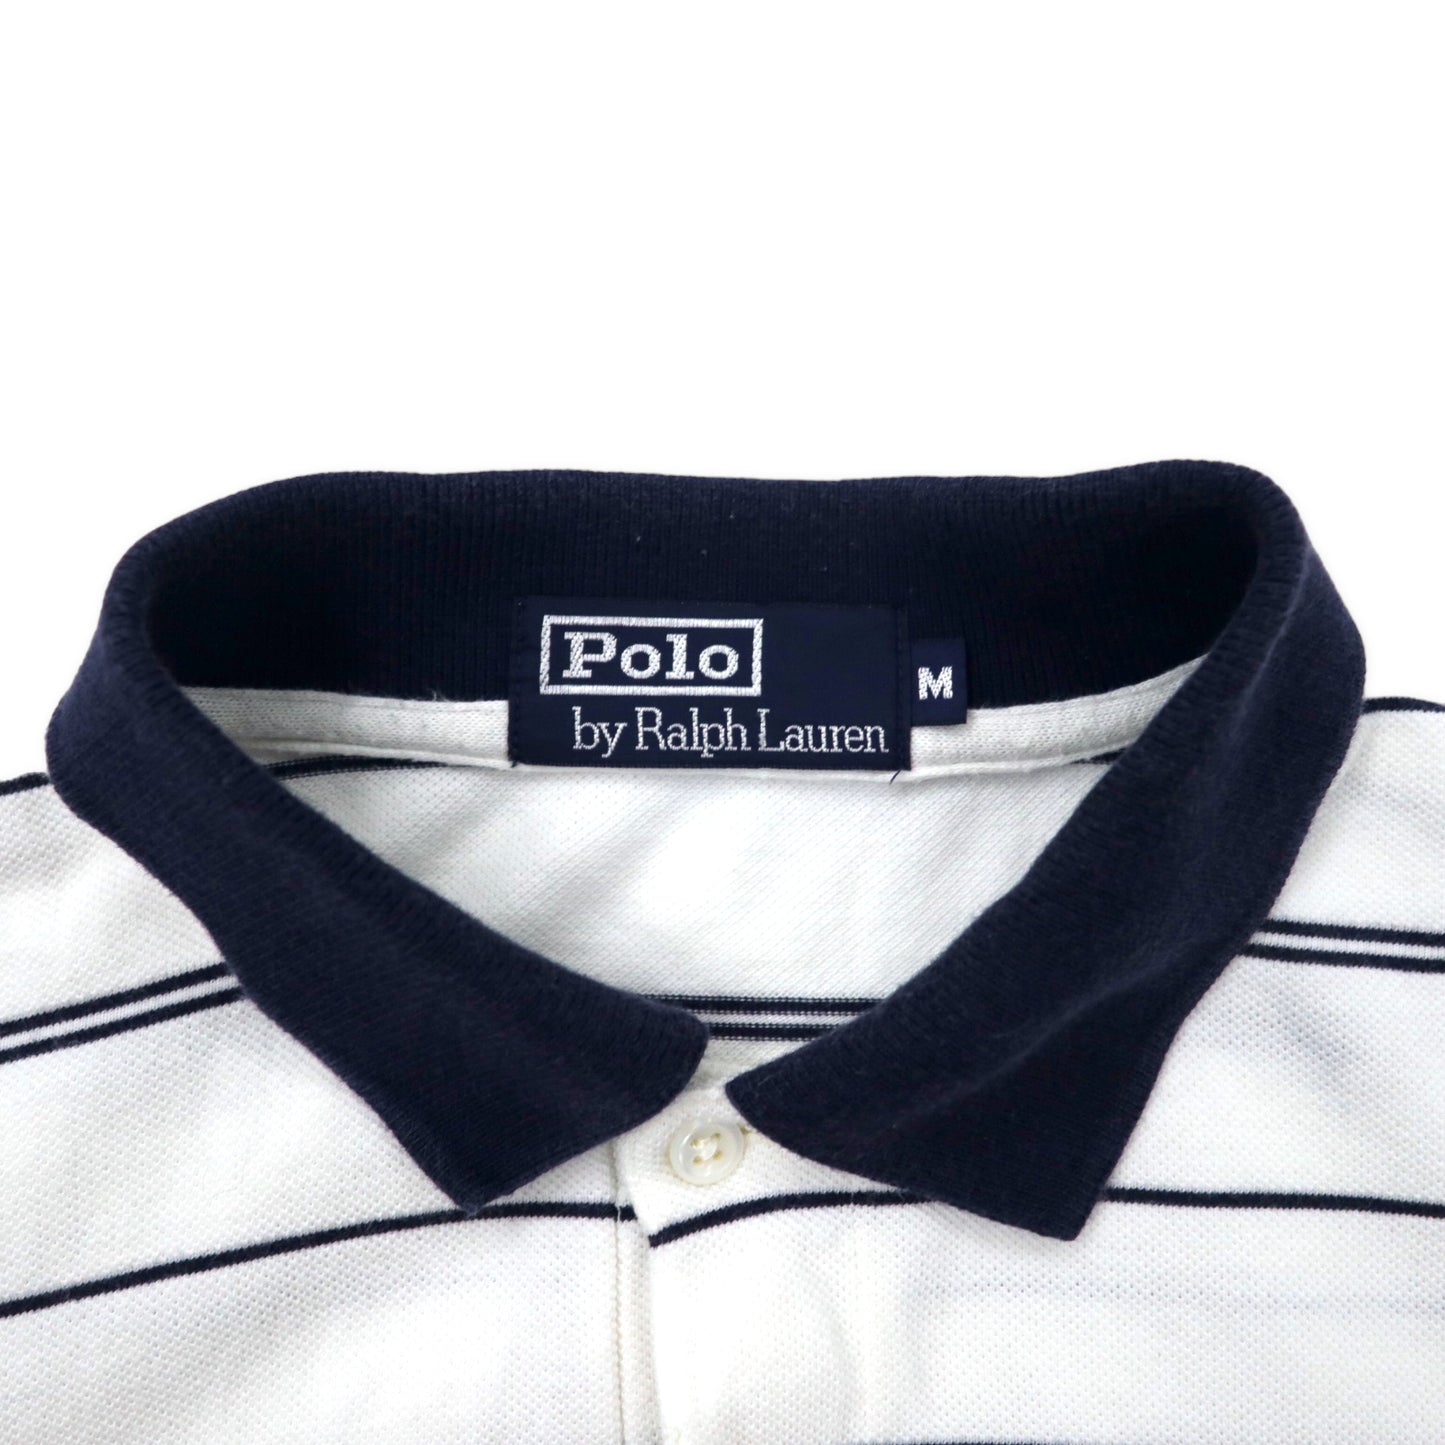 Polo by Ralph Lauren ボーダー ポロシャツ M ホワイト ネイビー コットン スモールポニー刺繍